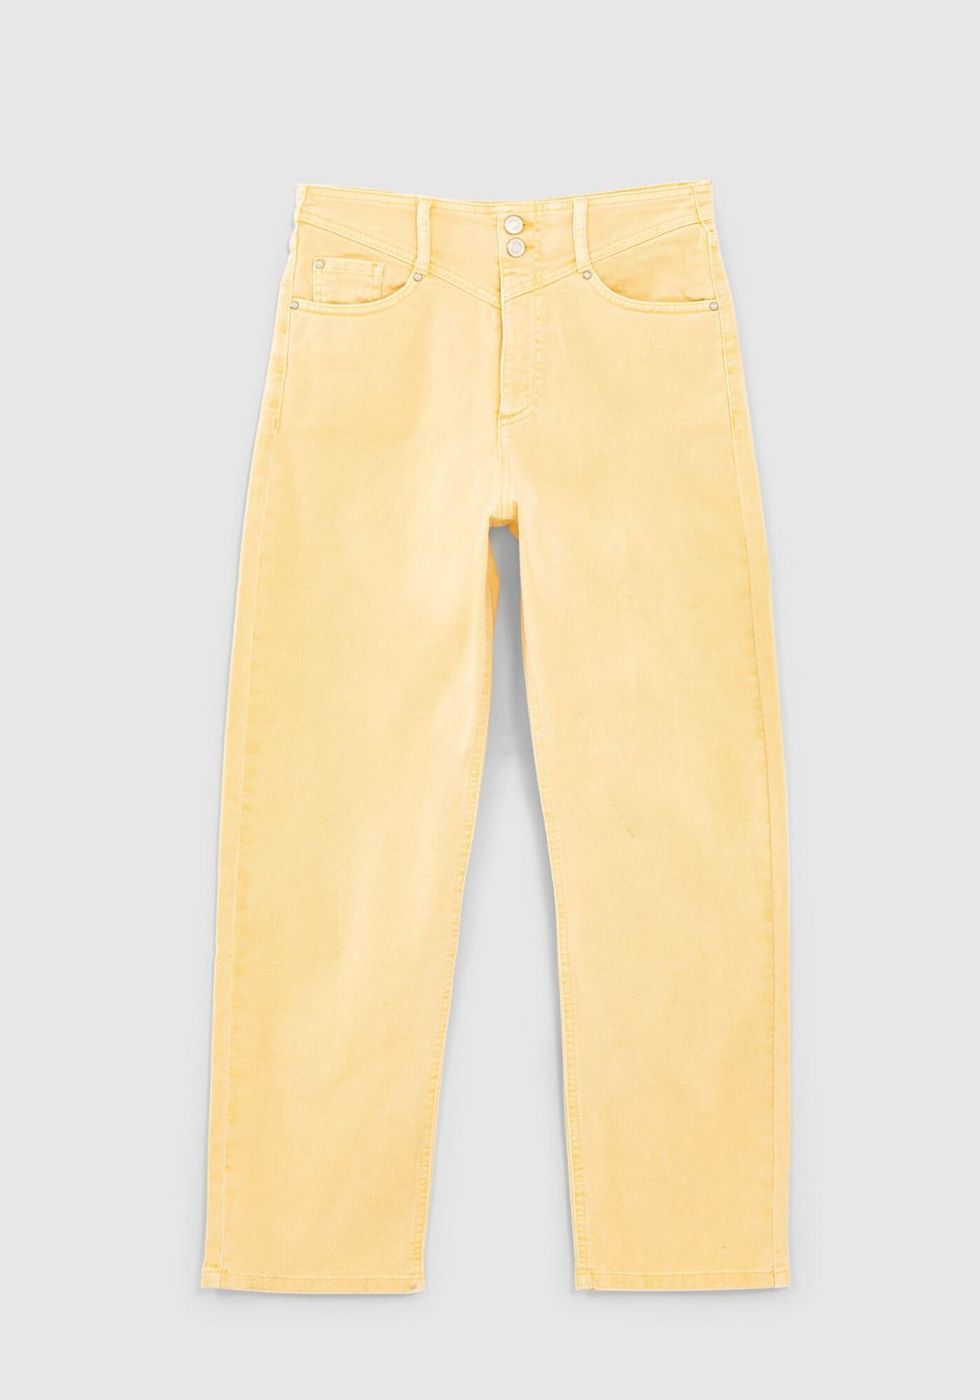 Pantalones vaqueros amarillos